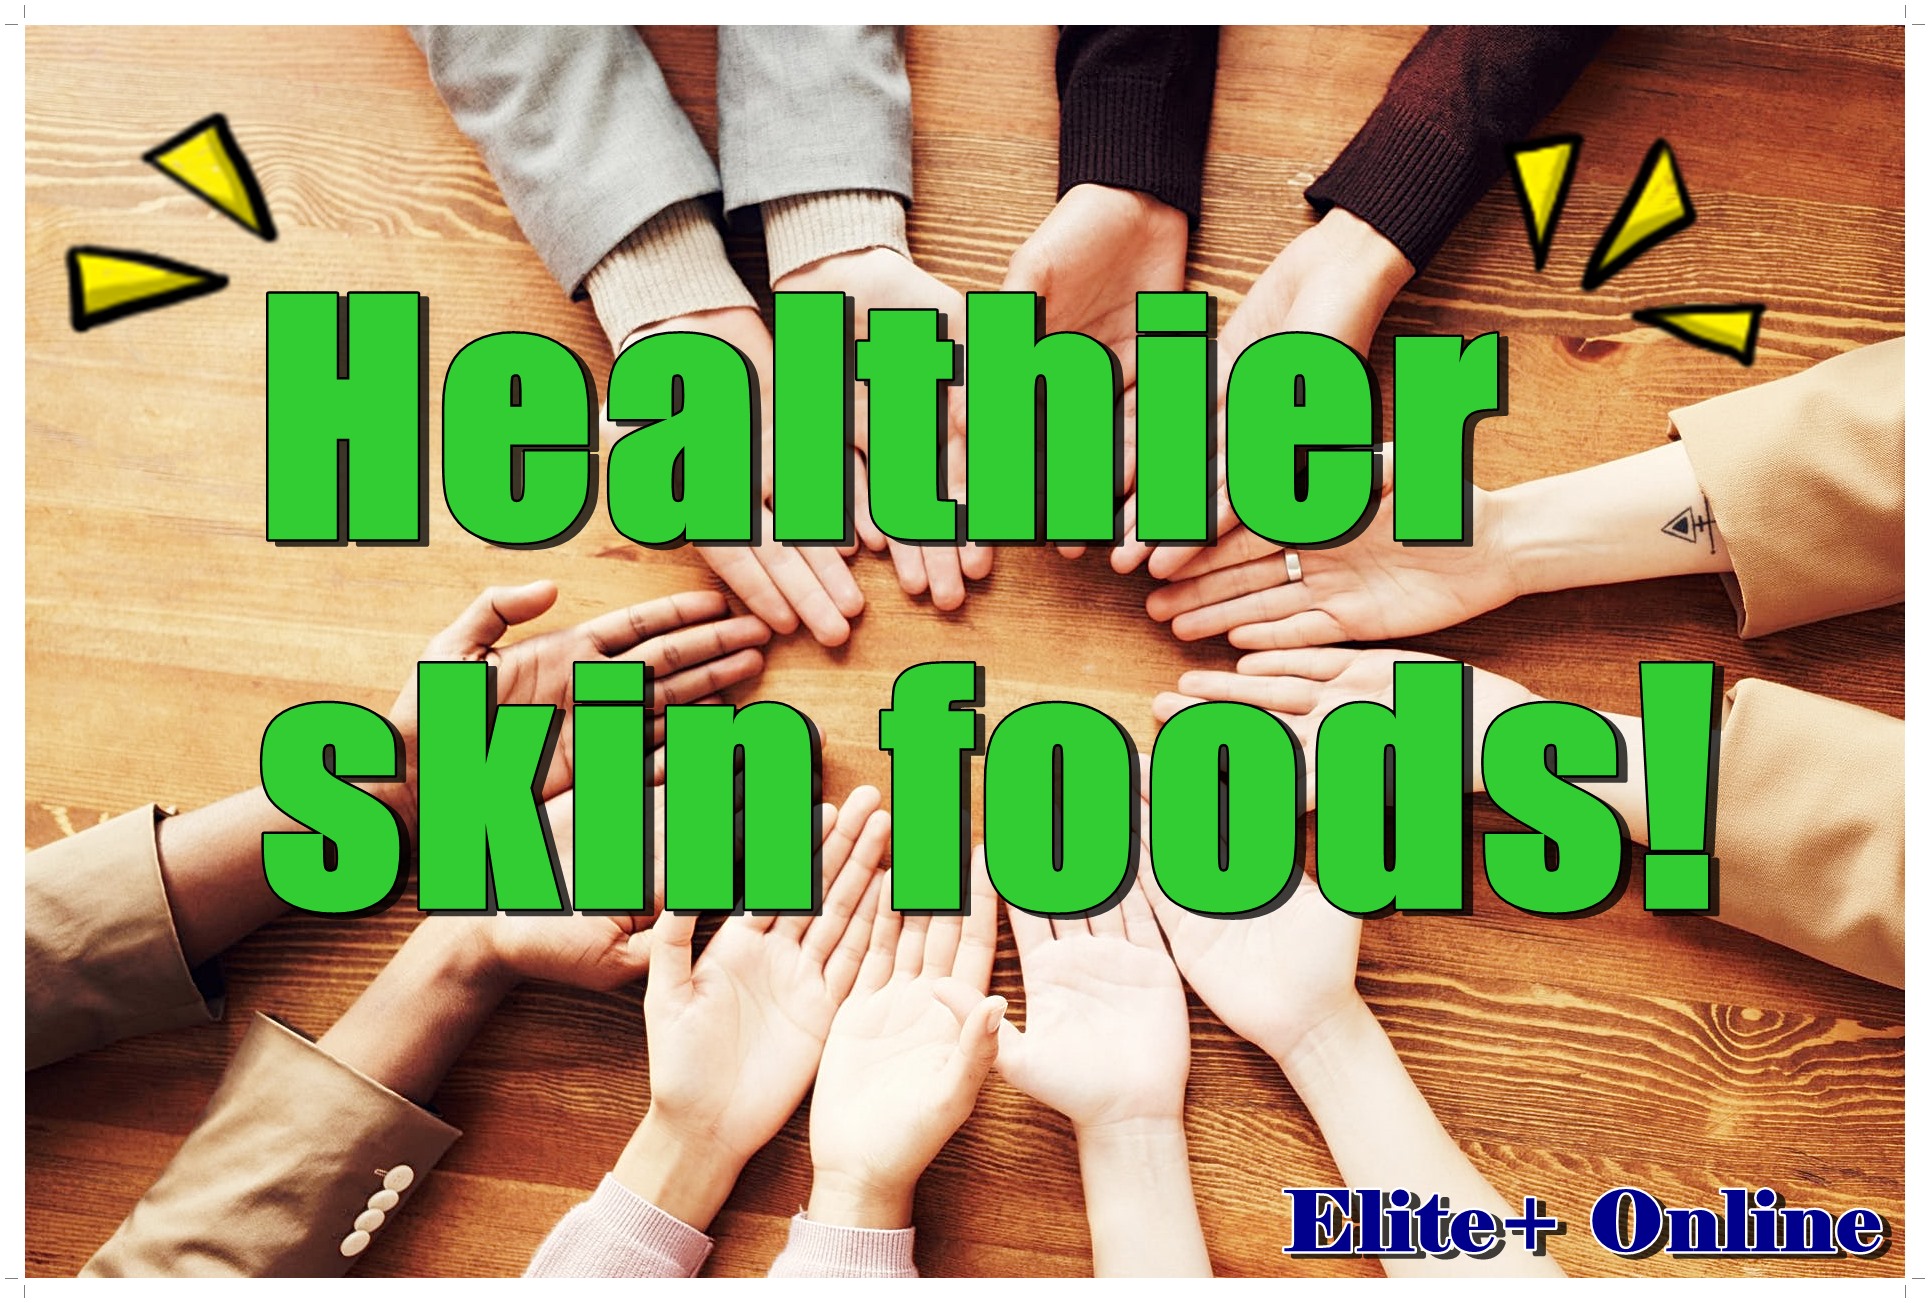 Healthier skin foods!